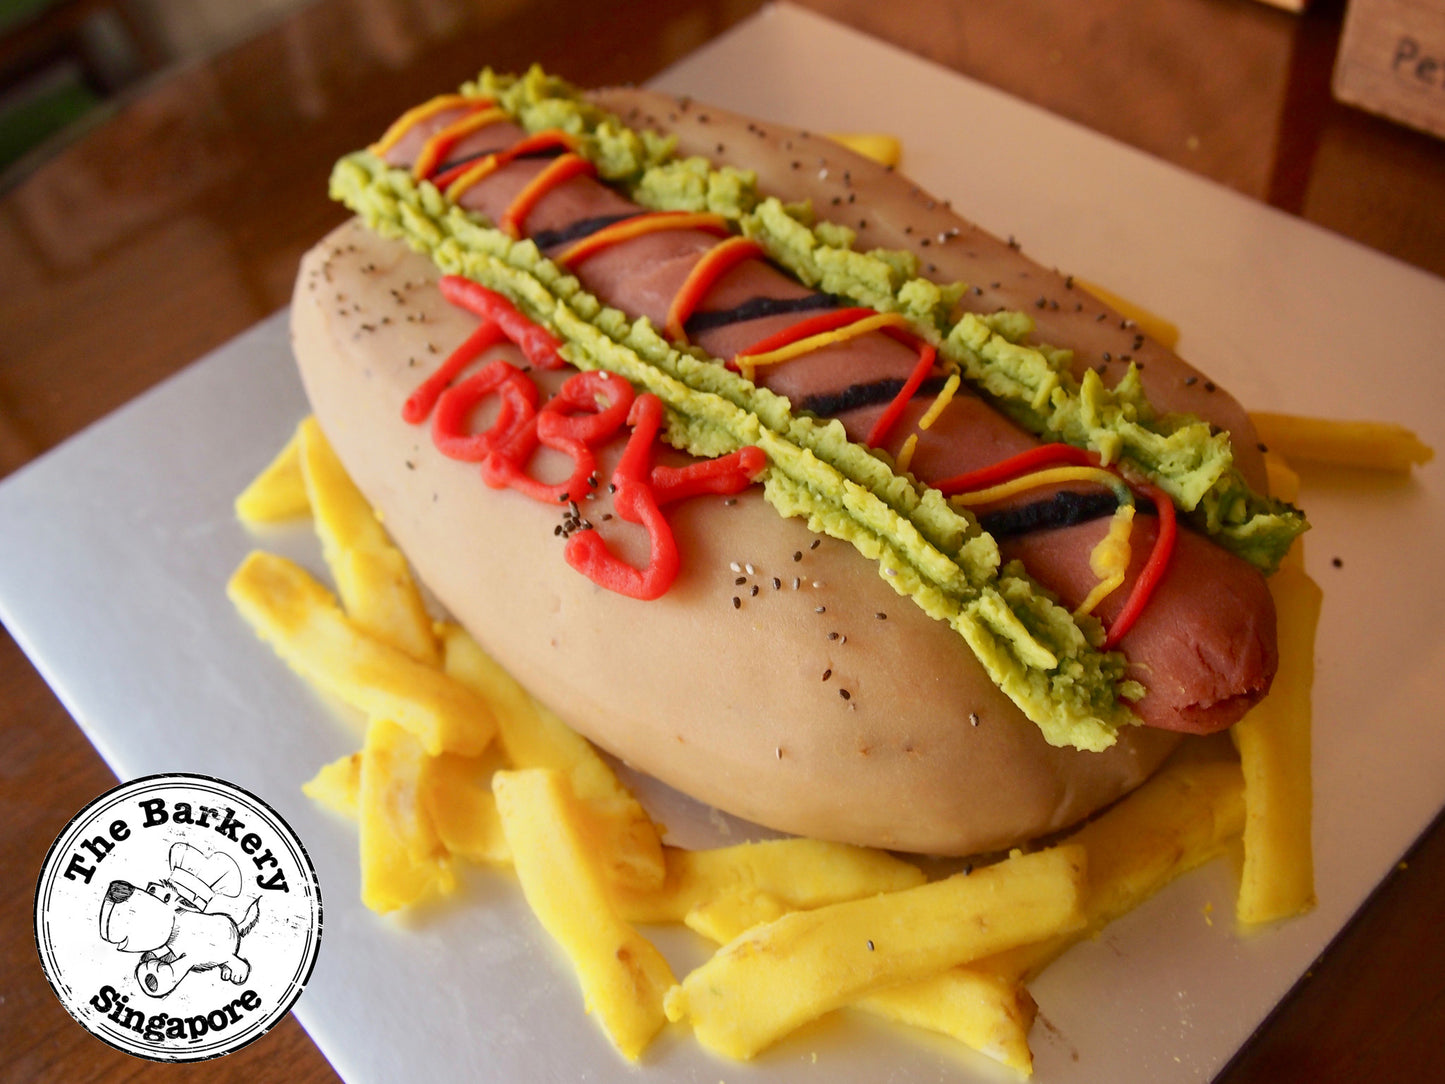 The Hot Dog Cake